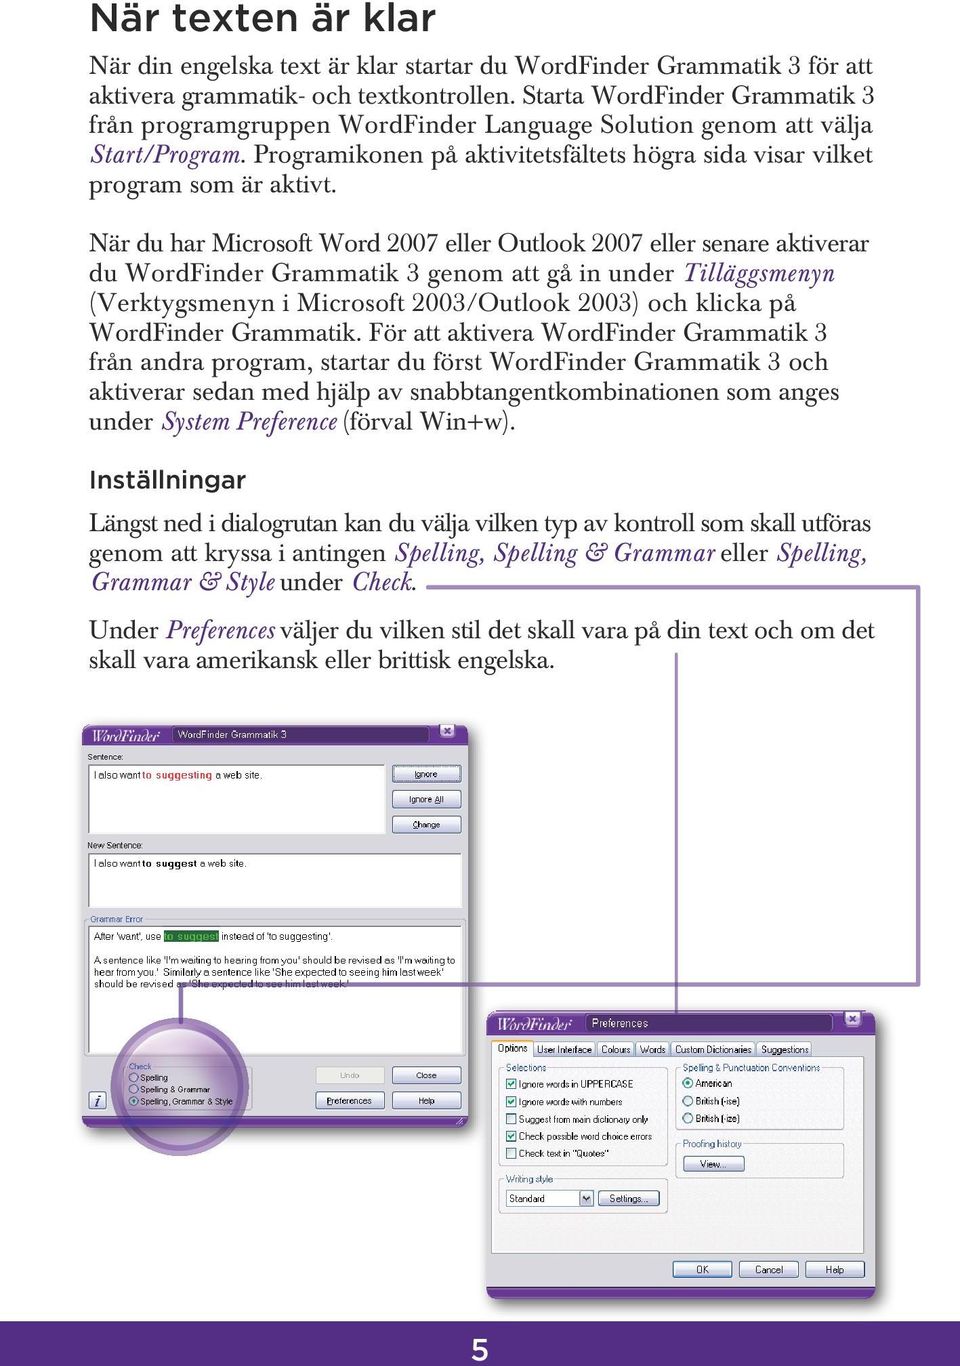 När du har Microsoft Word 2007 eller Outlook 2007 eller senare aktiverar du WordFinder Grammatik 3 genom att gå in under Tilläggsmenyn (Verktygsmenyn i Microsoft 2003/Outlook 2003) och klicka på